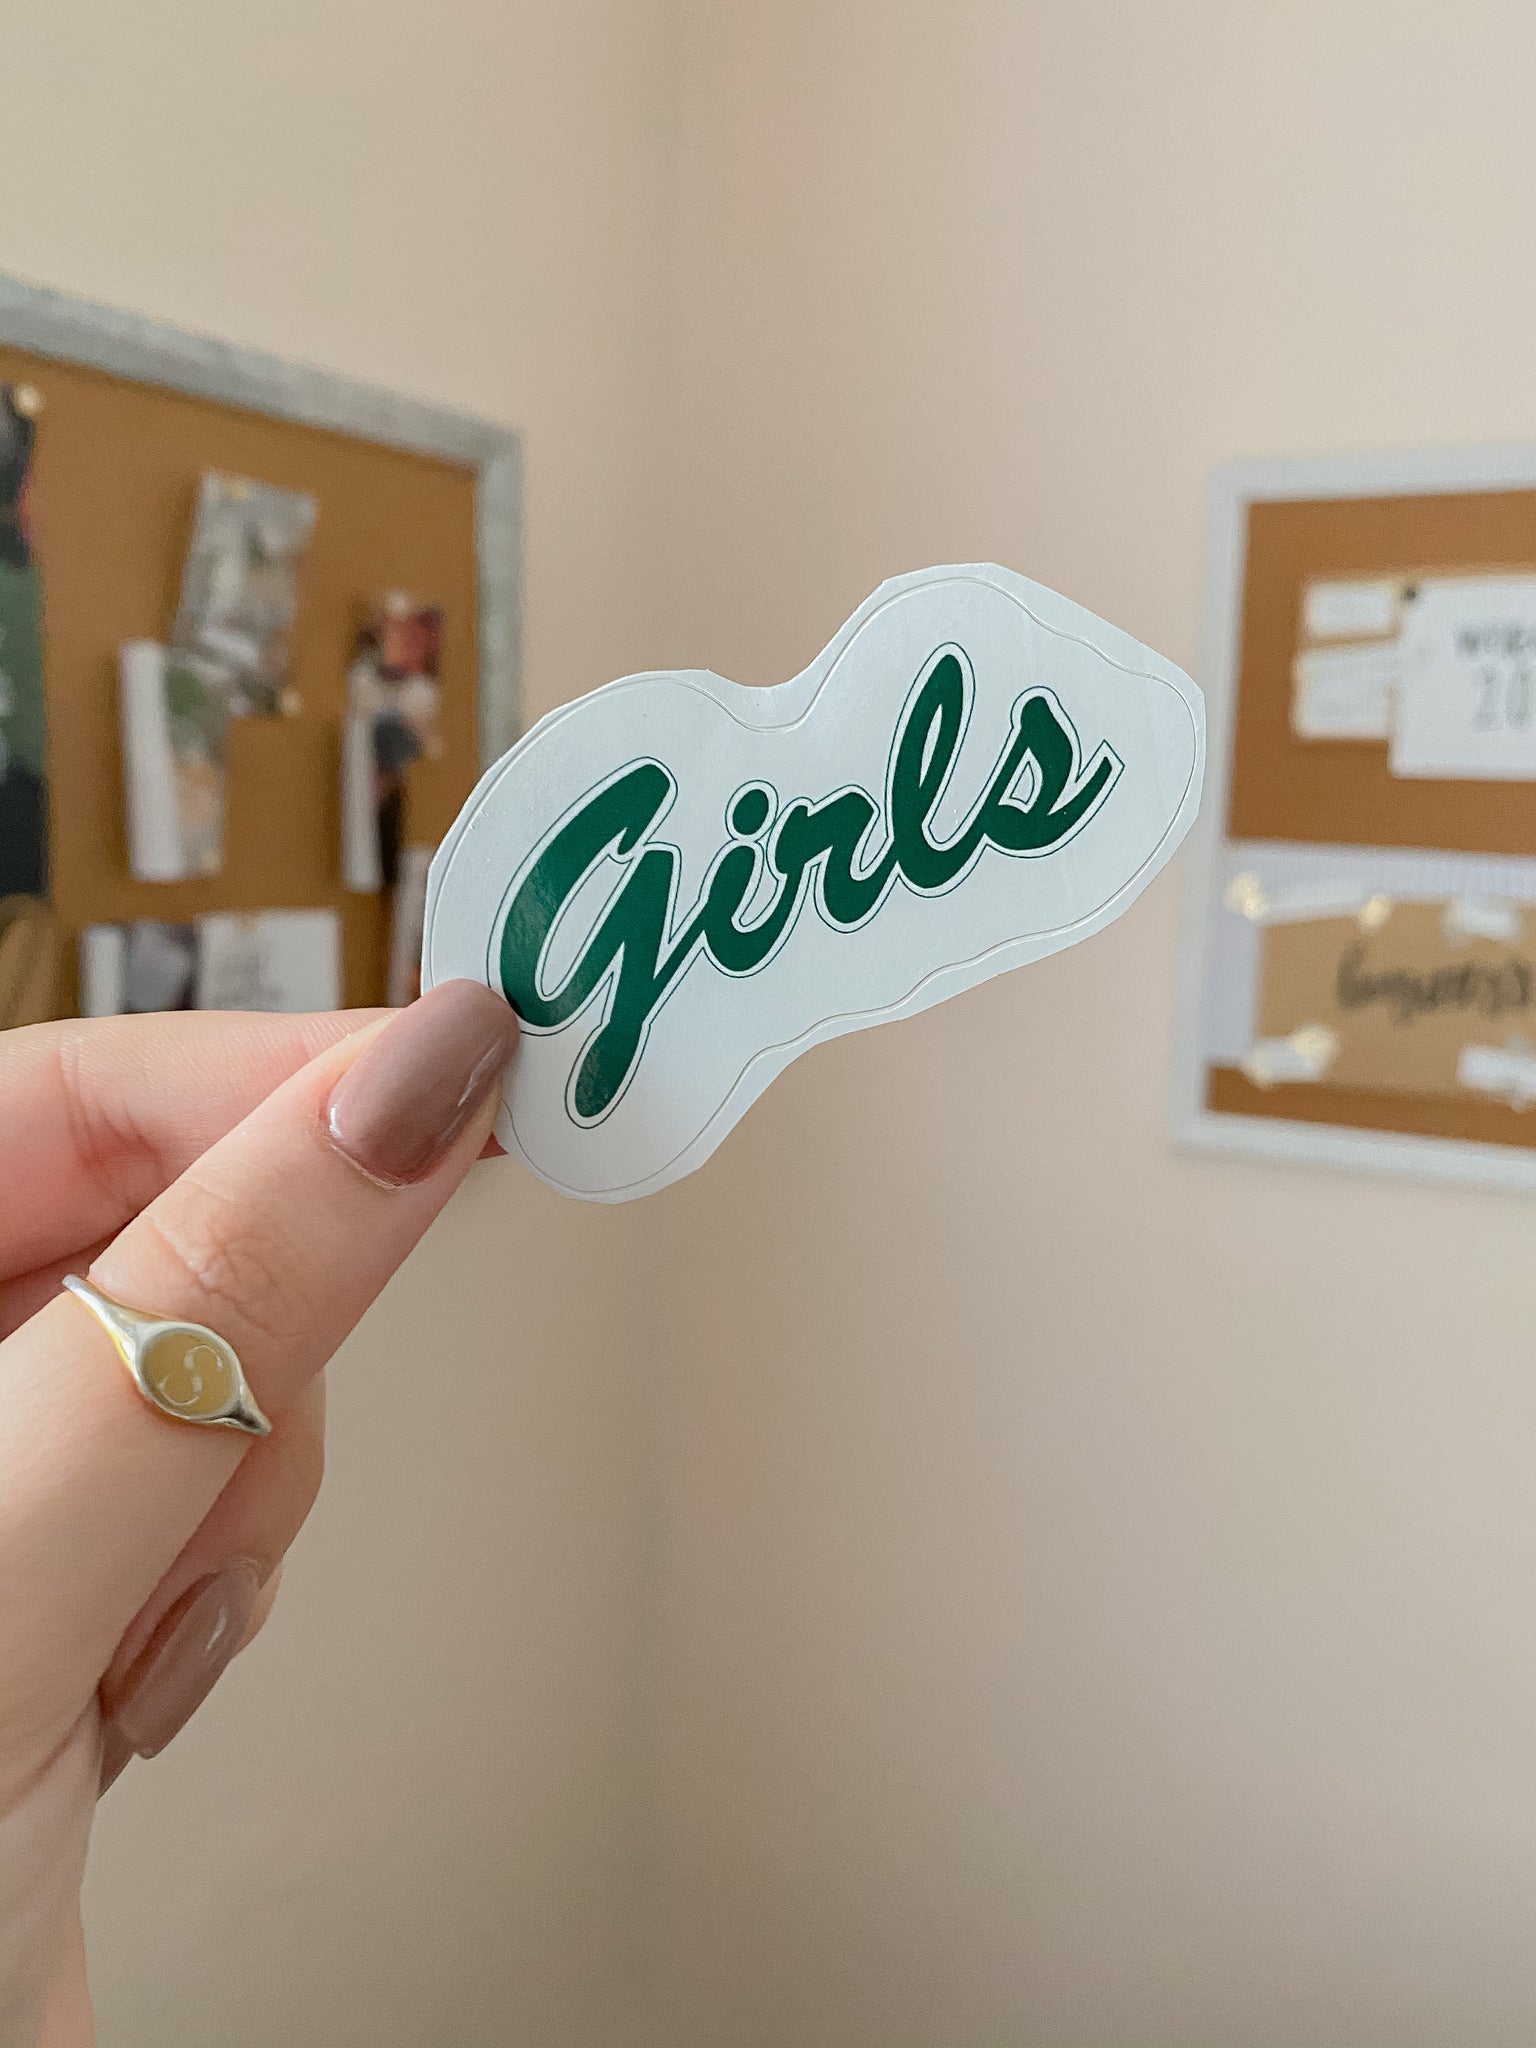 Girls Sticker